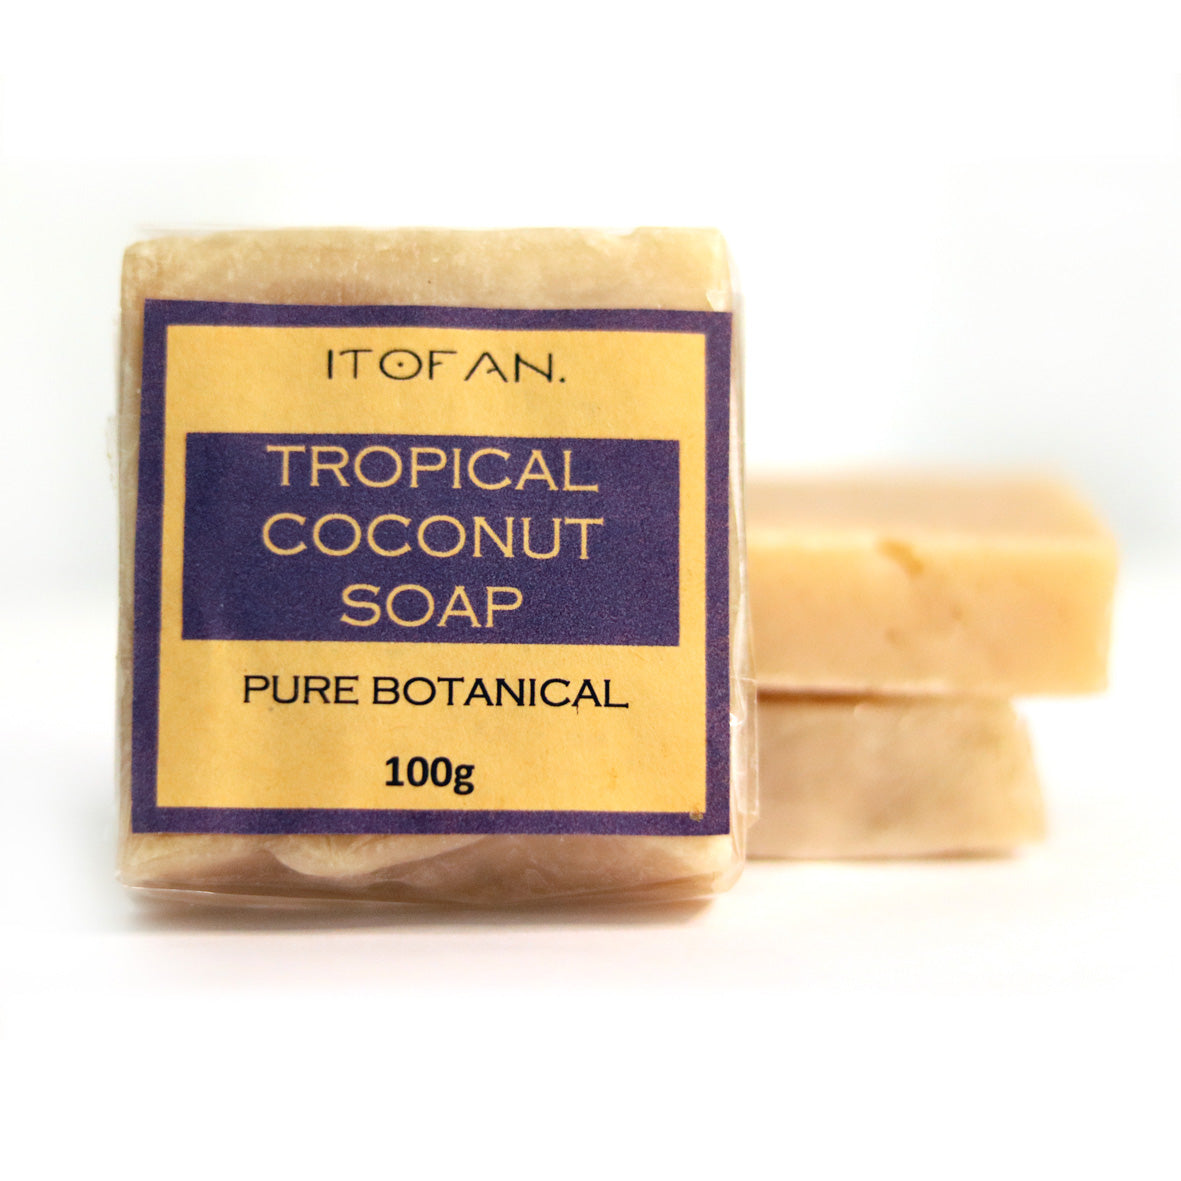 Tropical Coconut Soap Bar